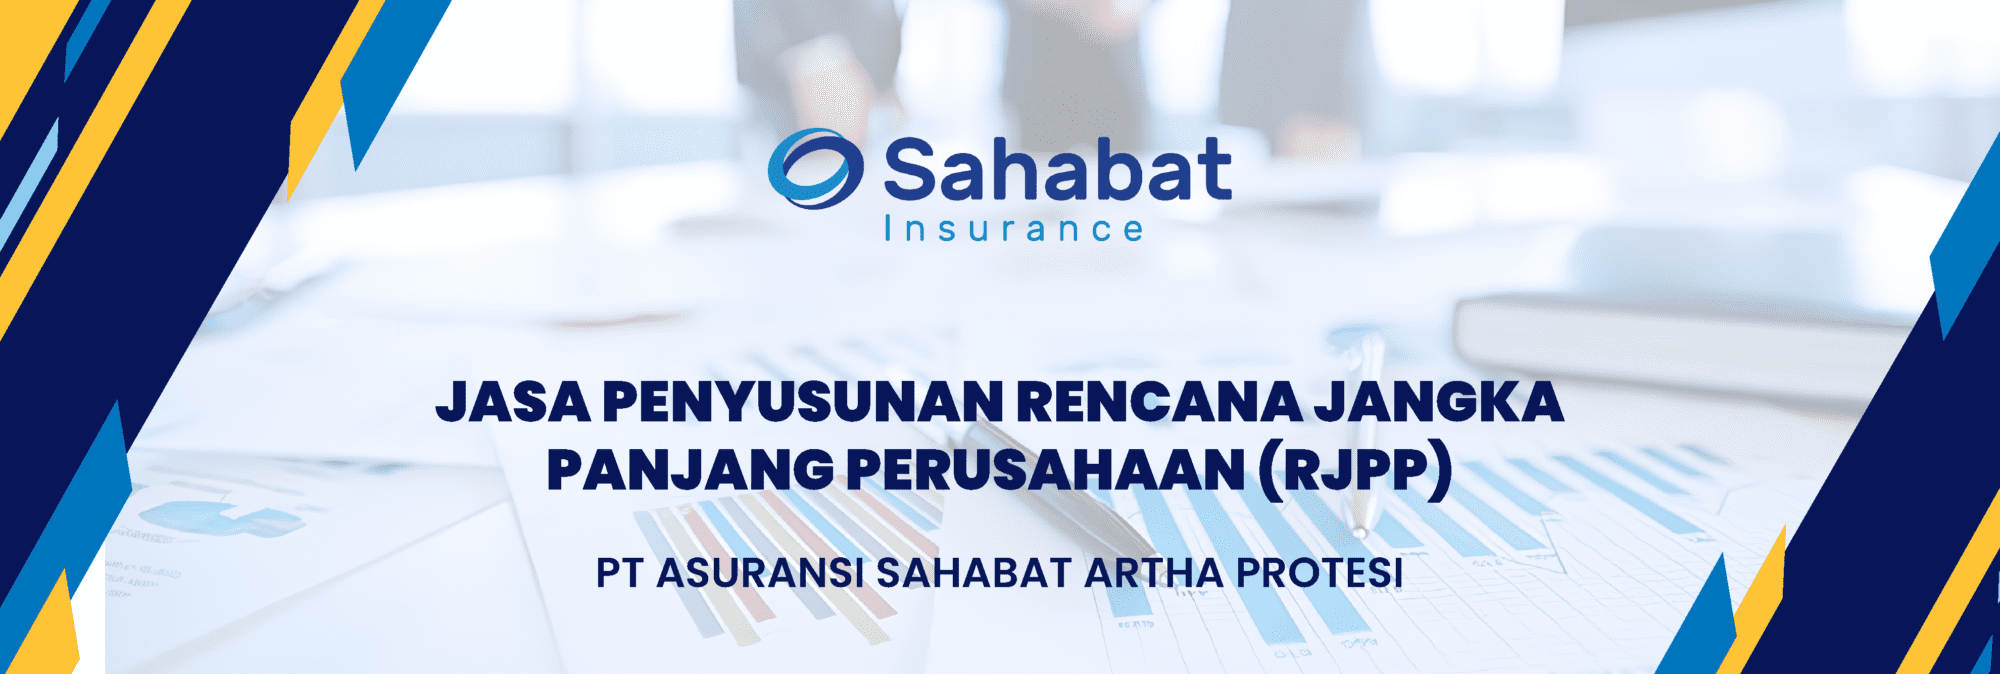 RJPP Sahabat Insurance